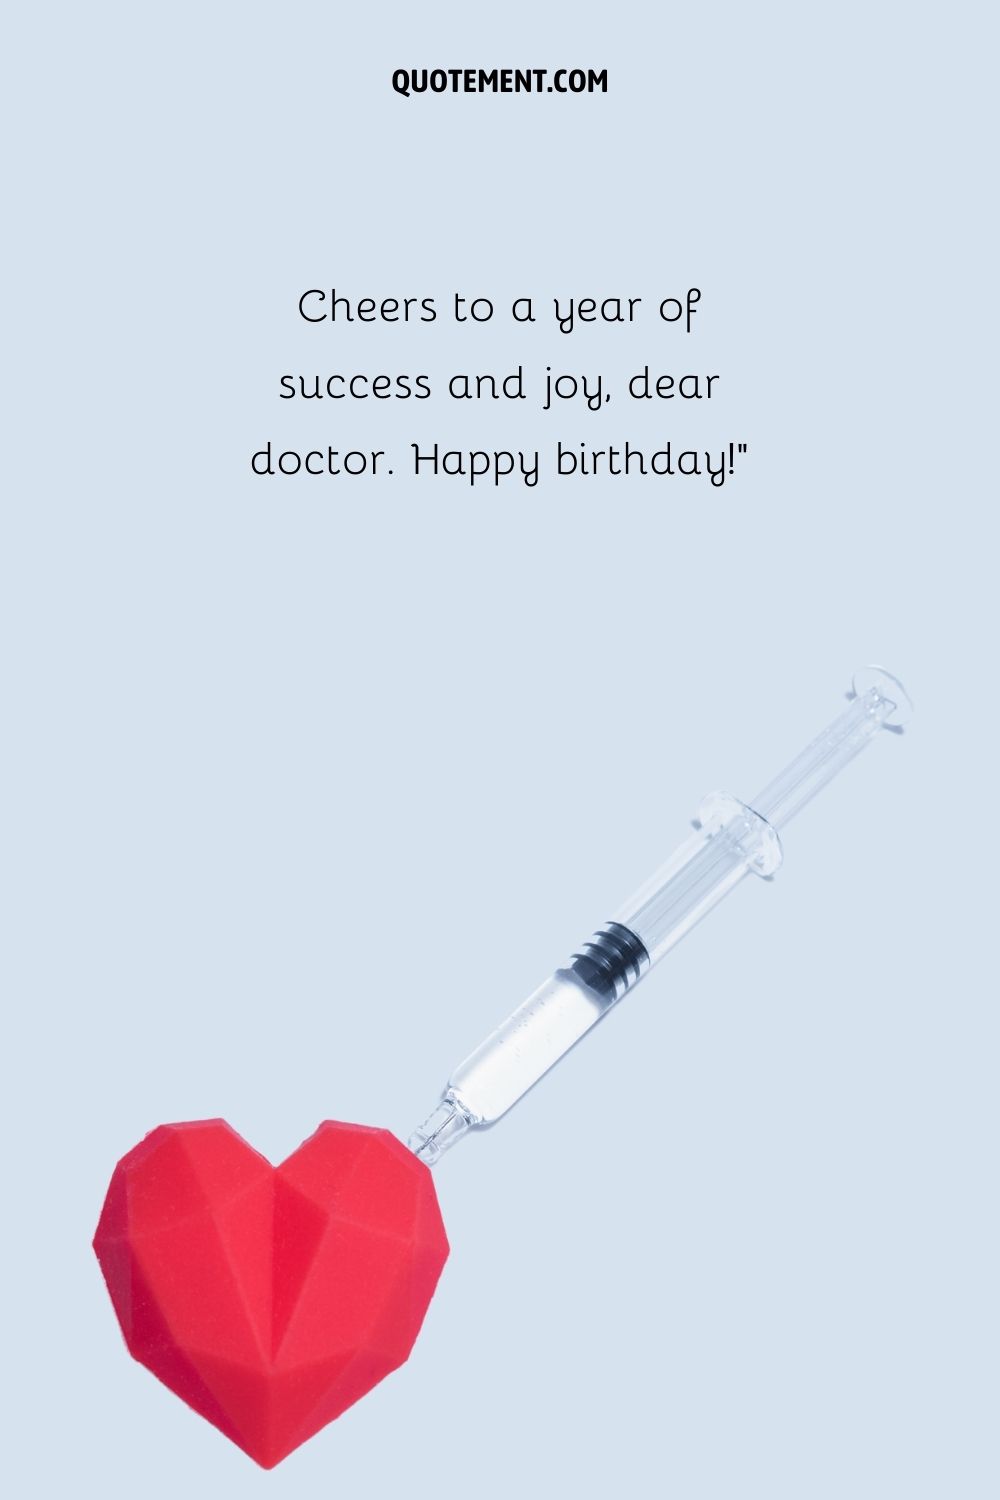 inyección a un corazón emoji que representa un breve deseo de feliz cumpleaños médico